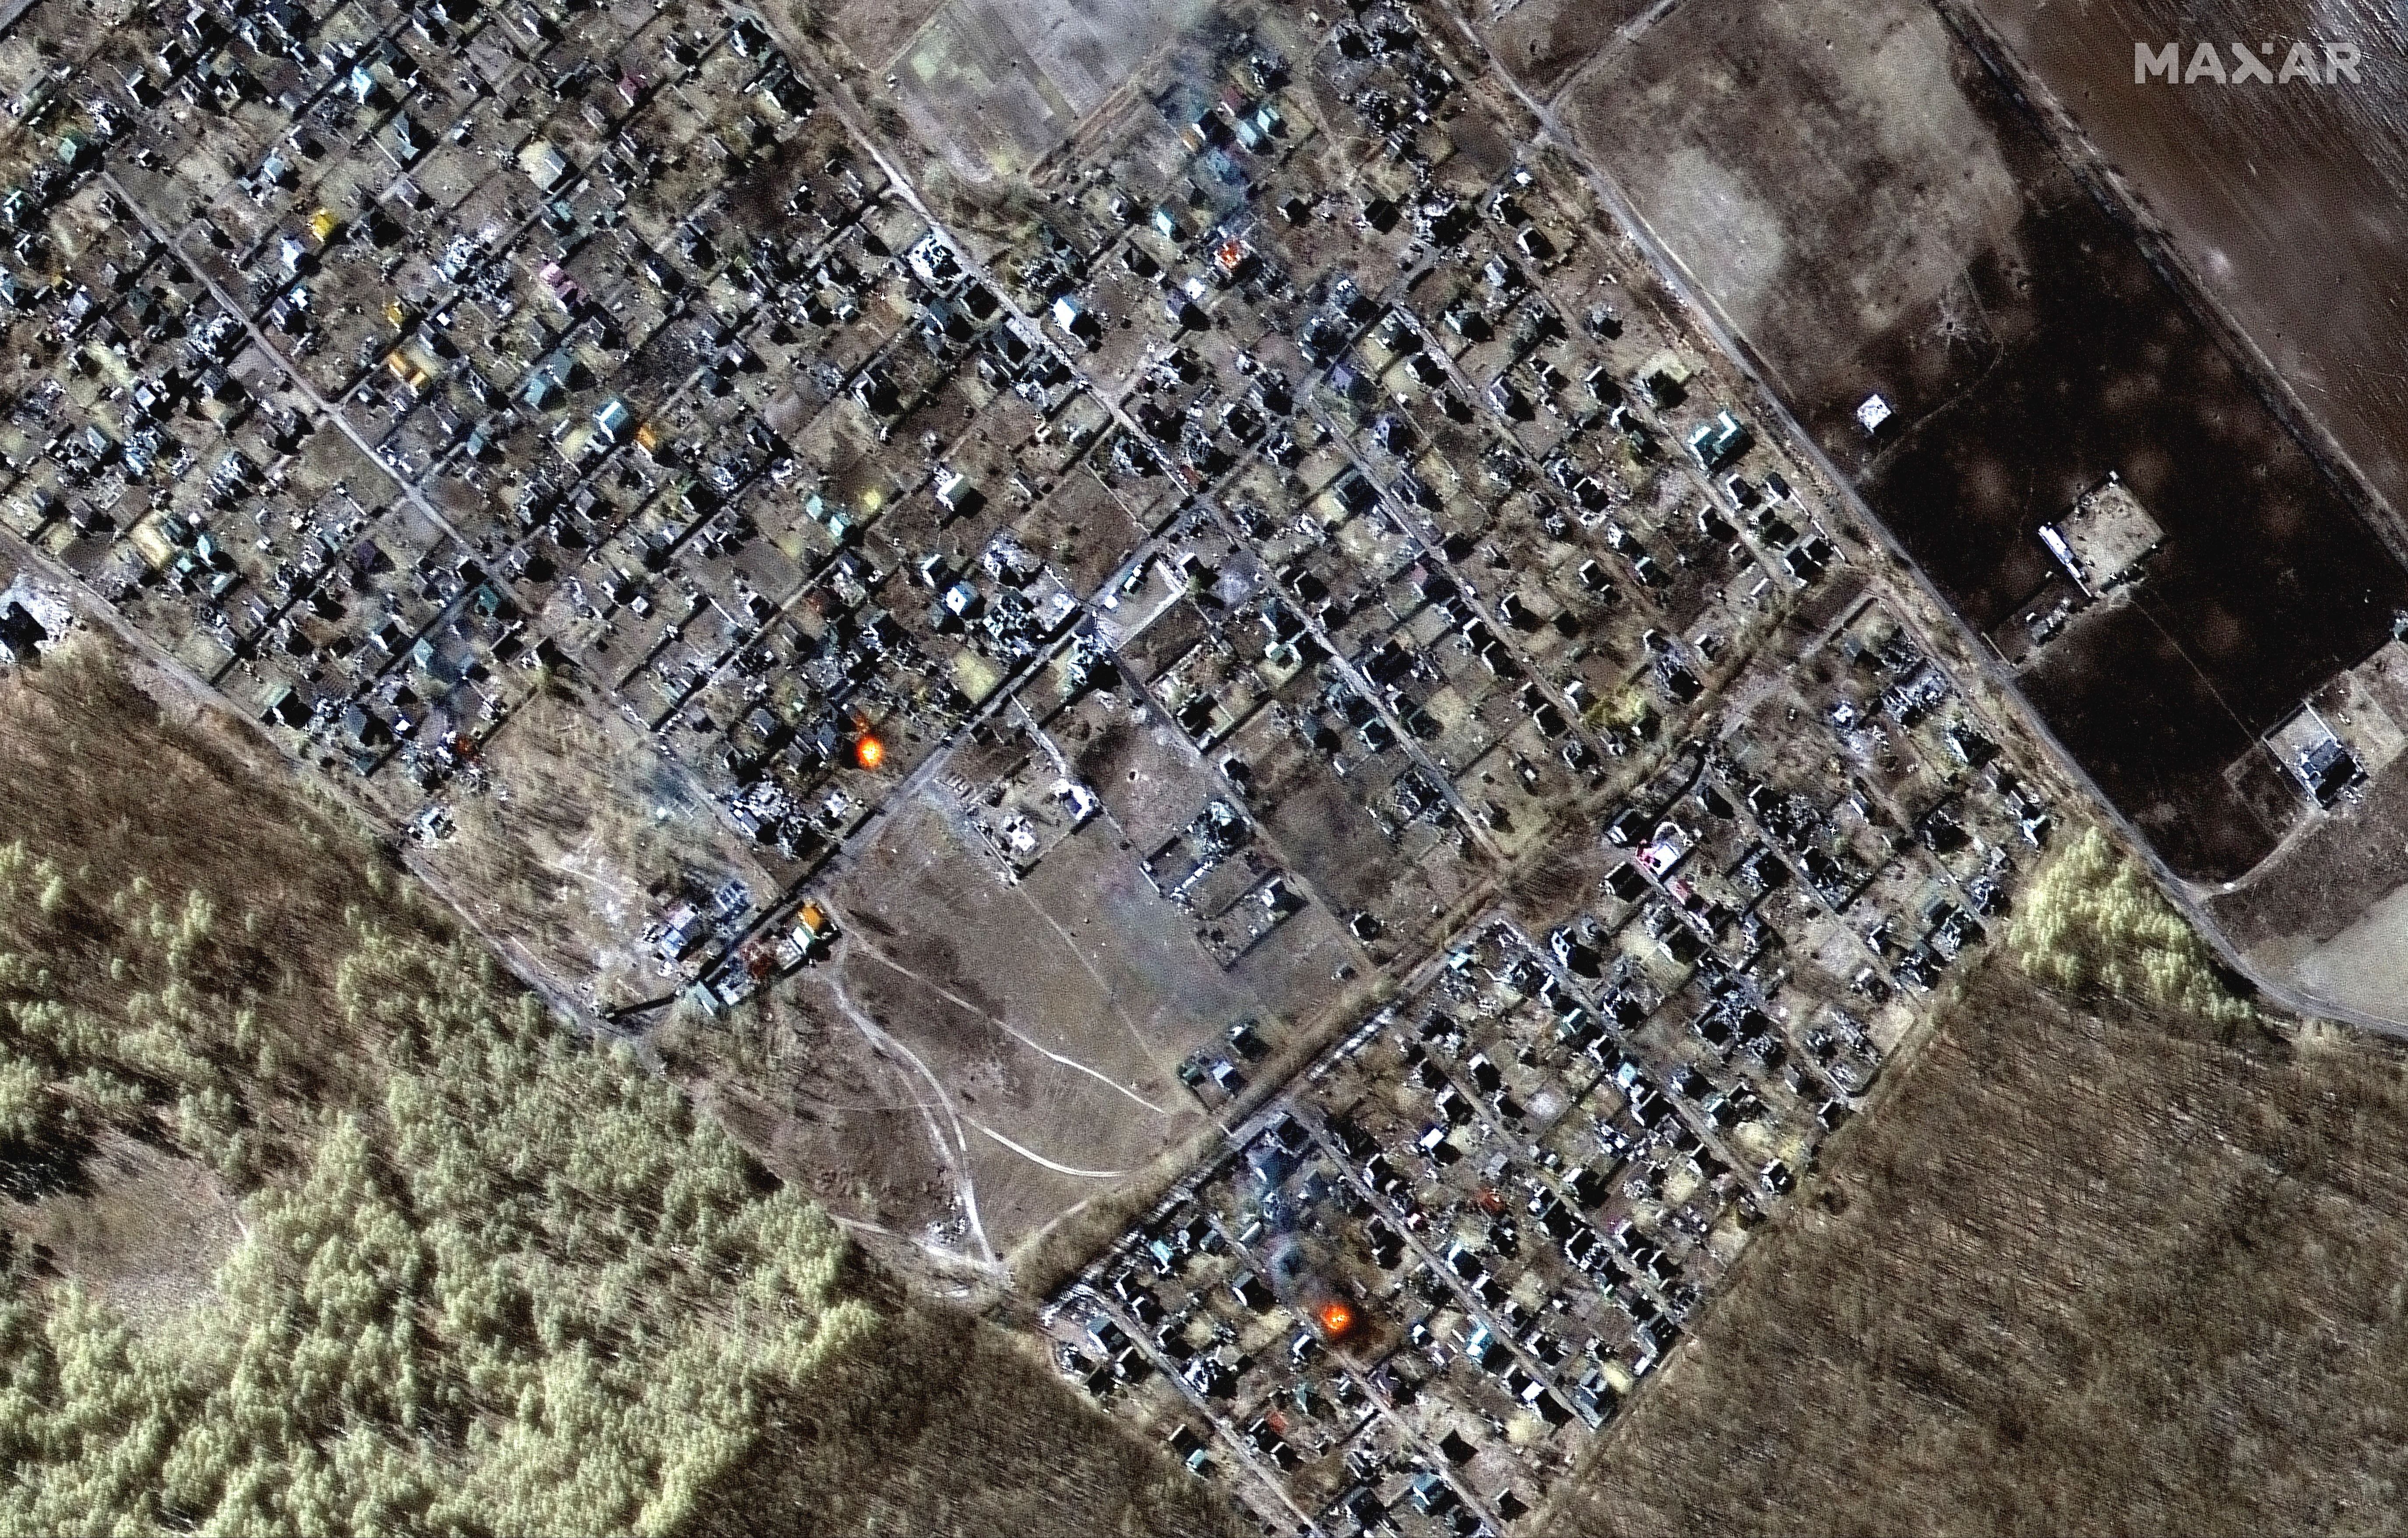 Una imagen satelital muestra una visión general multiespectral de las casas en llamas en Moschun, Ucrania, este 11 de marzo de 2022 (Maxar Technologies/REUTERS)